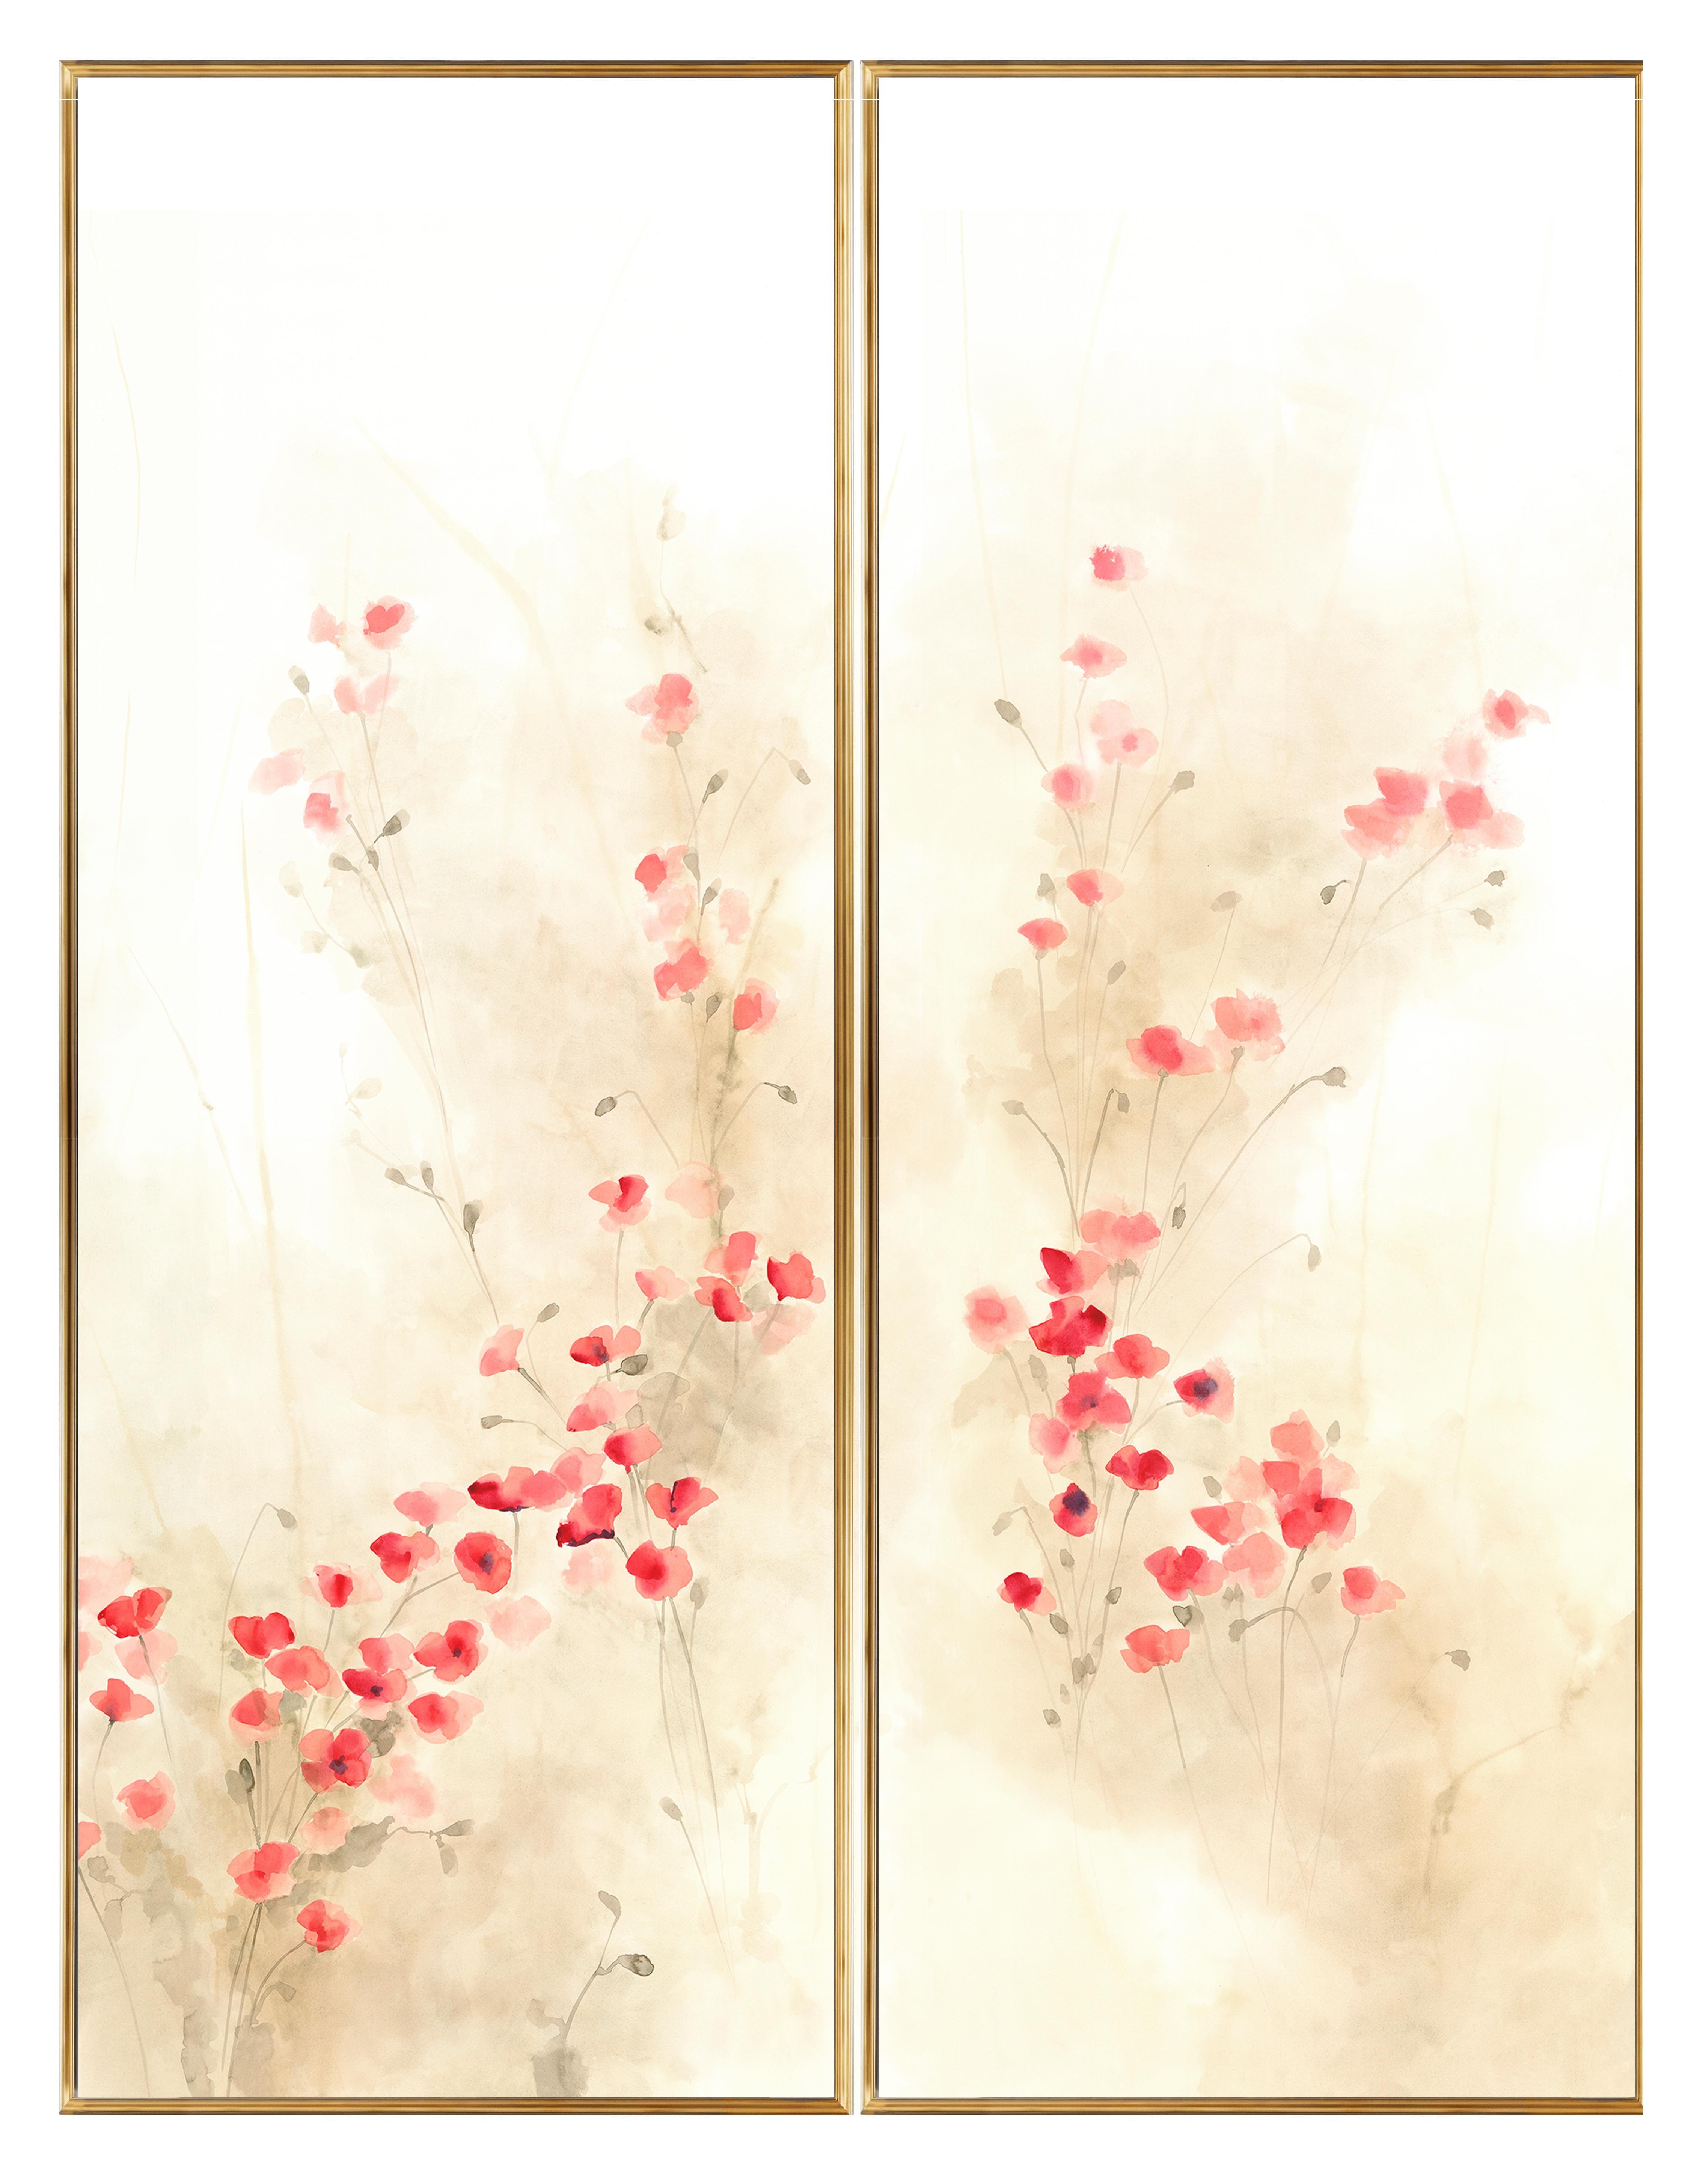 Cette décoration murale charmante et sophistiquée a été entièrement peinte à la main sur du papier 100% coton naturel, selon la technique sumi-e inspirée des anciennes peintures coréennes. Il est particulièrement idéal comme complément accrocheur à